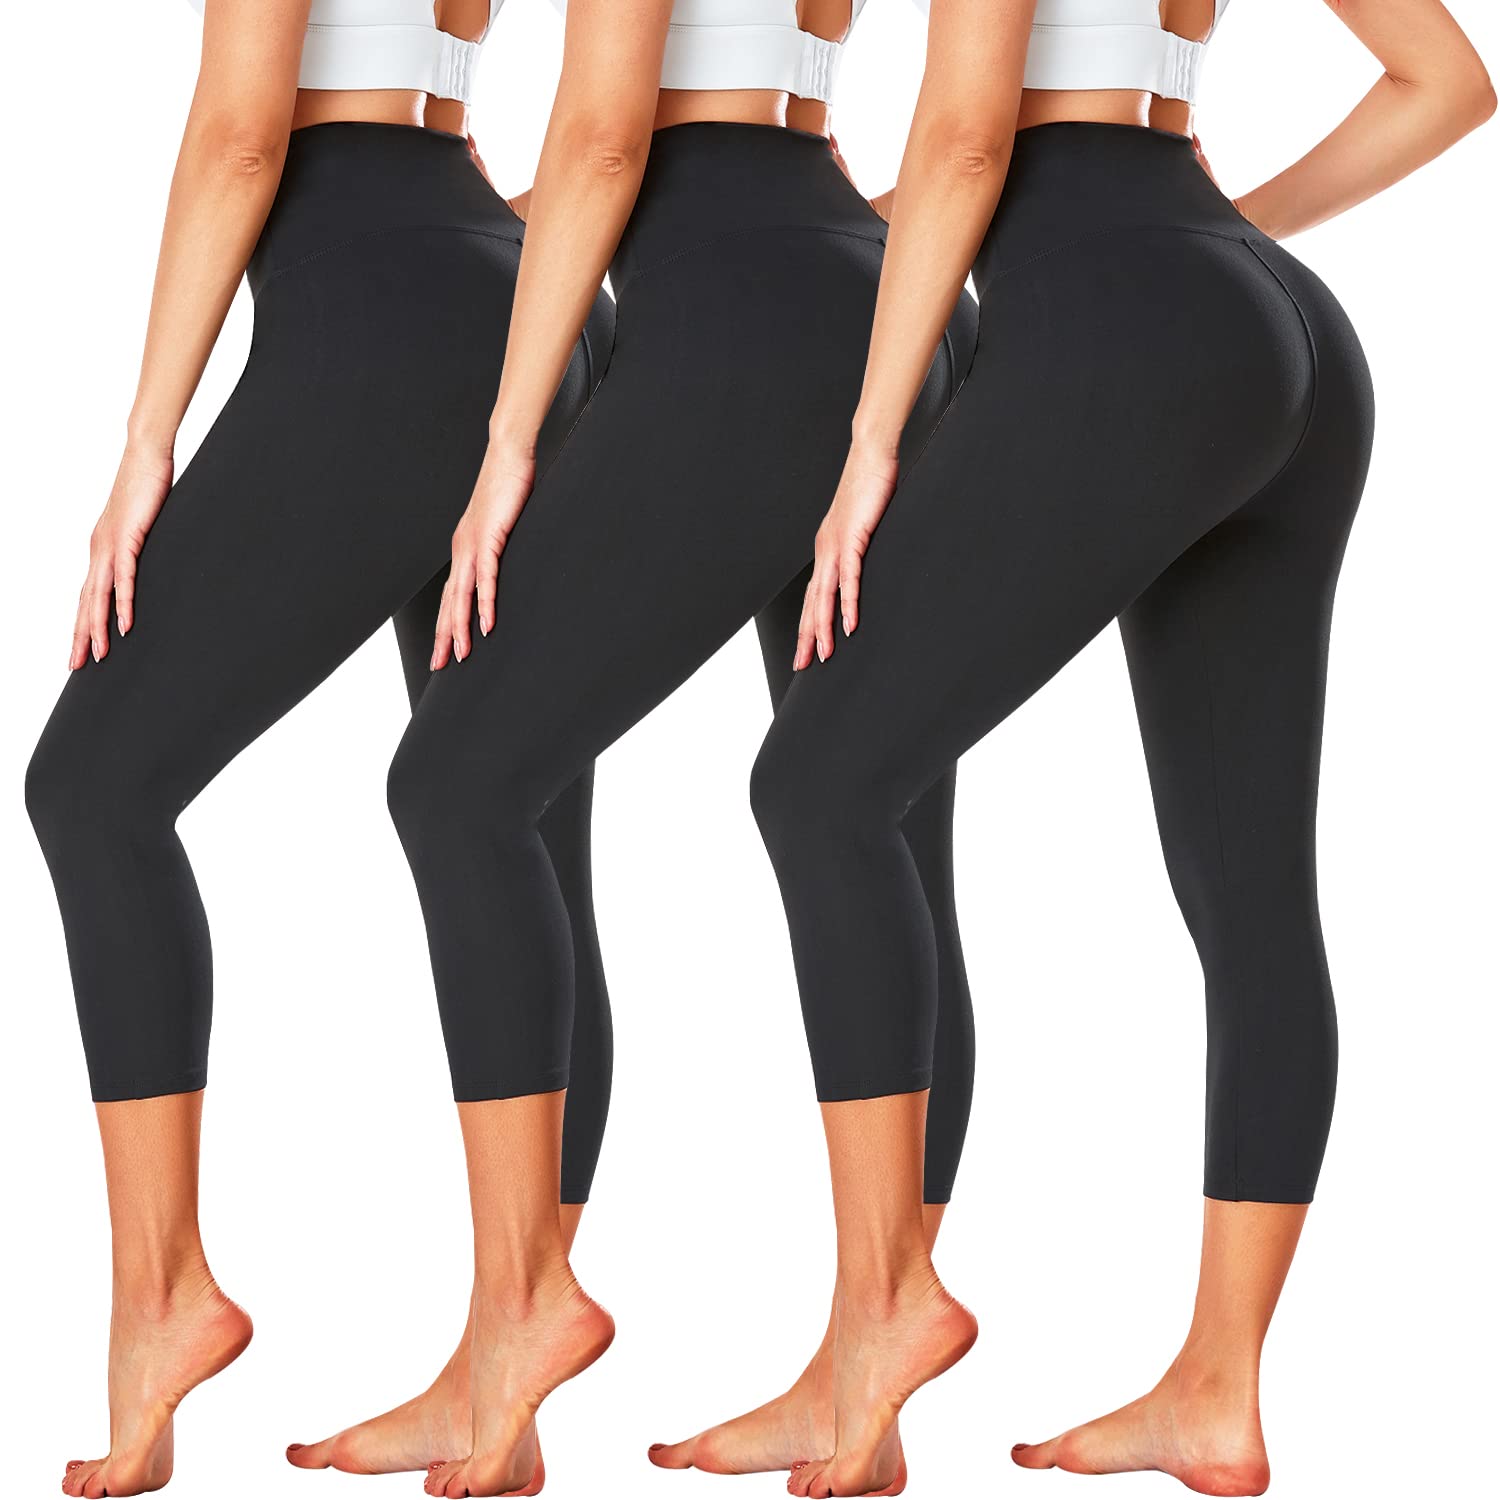 FULLSOFT 3 Pack Capri Leggings for Women - High Waisted Tummy